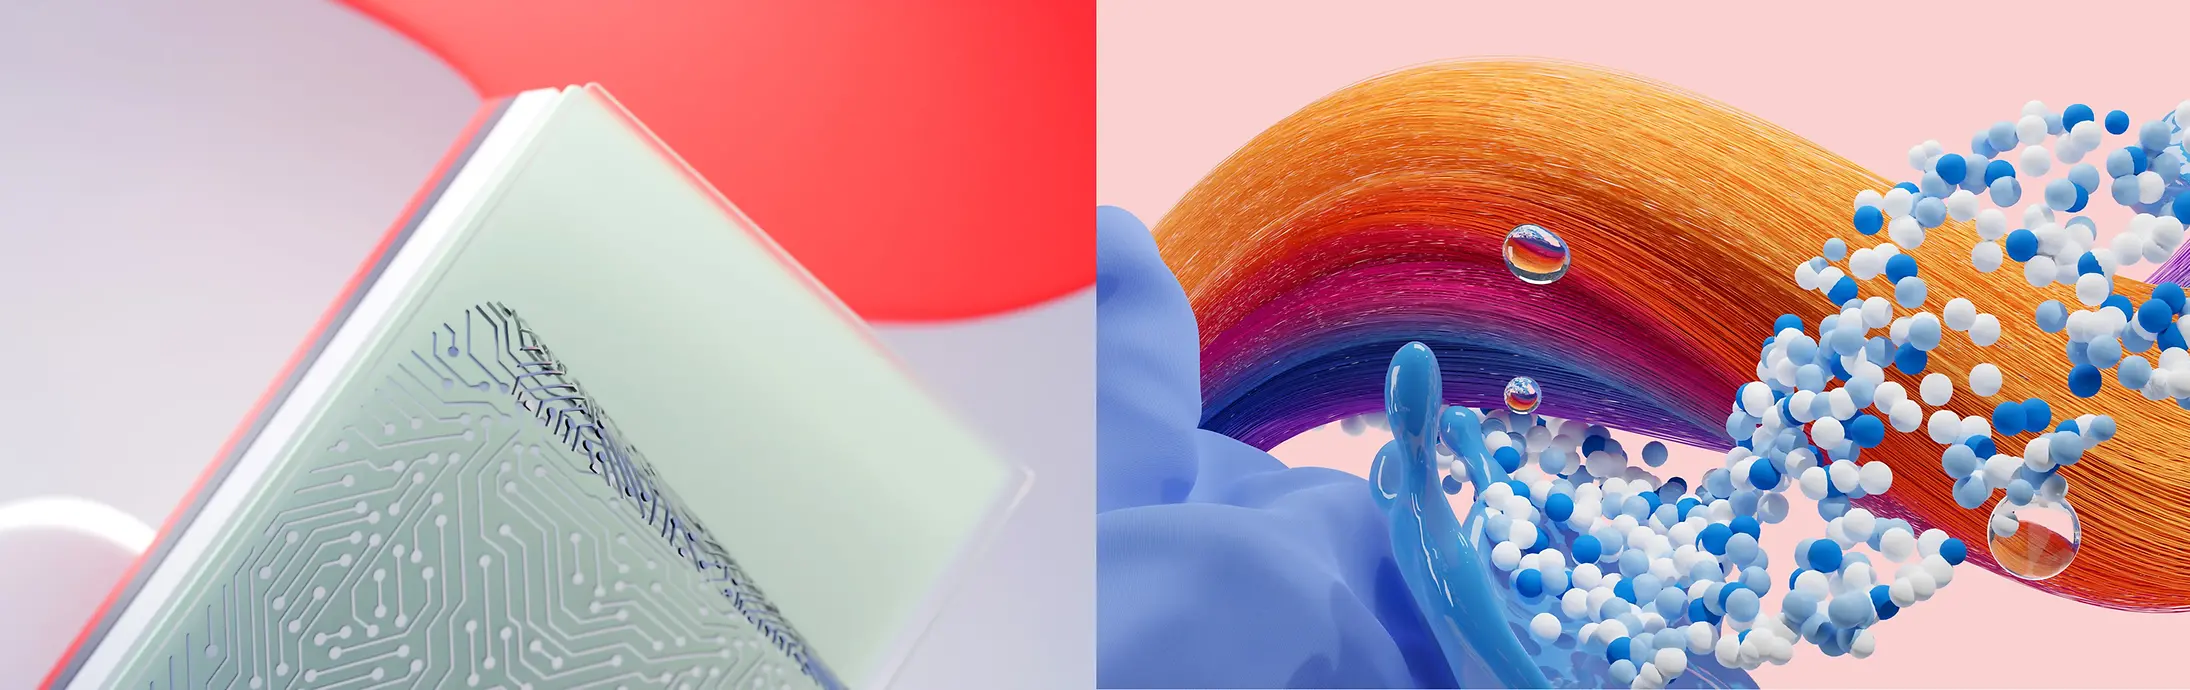 Imagem abstrata representando os negócios da Henkel Adhesive Technologies, Hair e Laundry & Home Care.